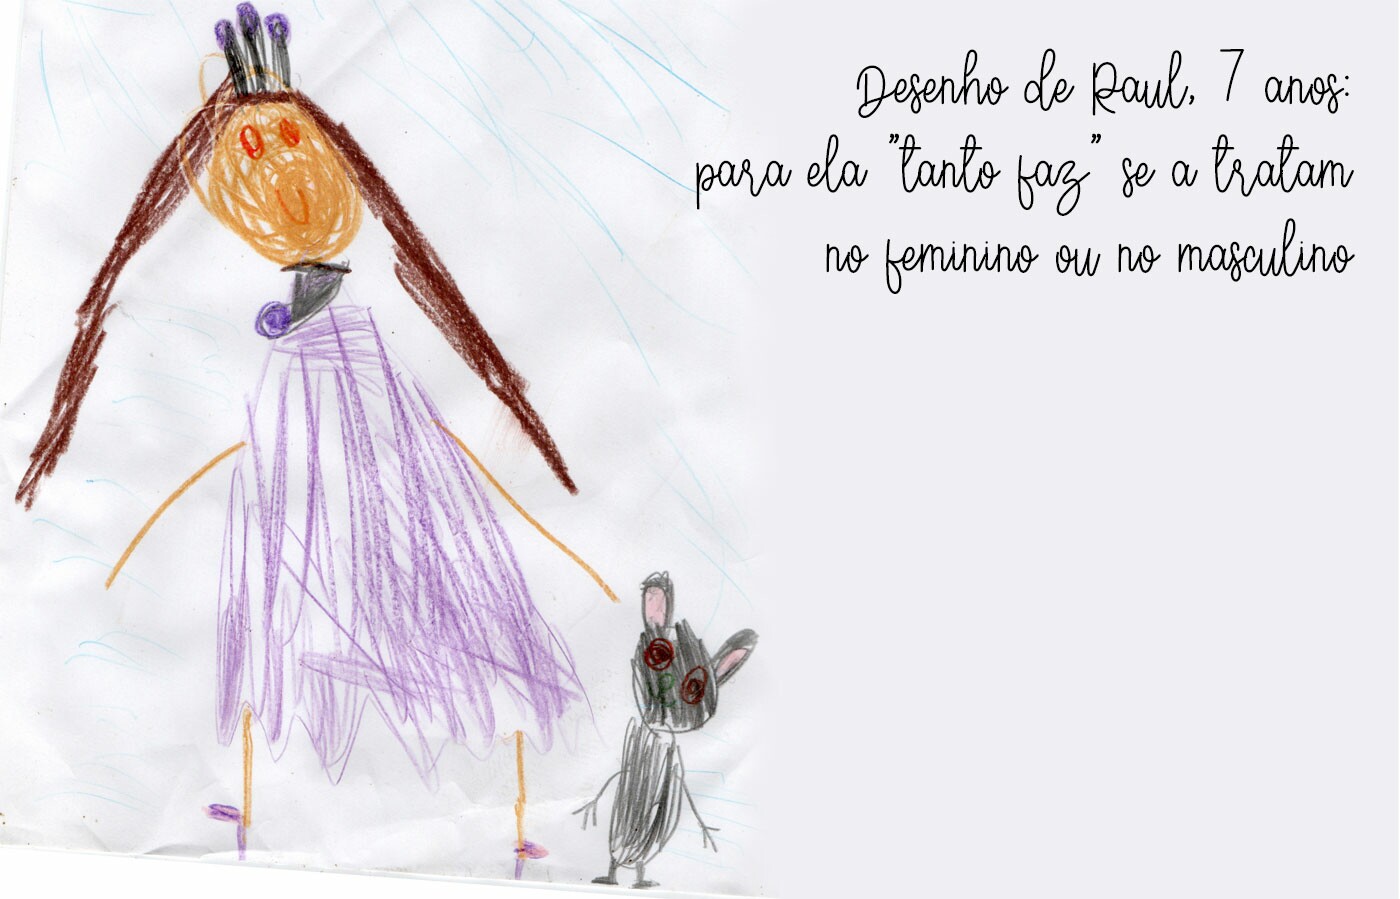 Desenho de Raul, 7 anos, apresenta uma criança com vestido roxo, cabelos castanhos e um coelho de pelúcia